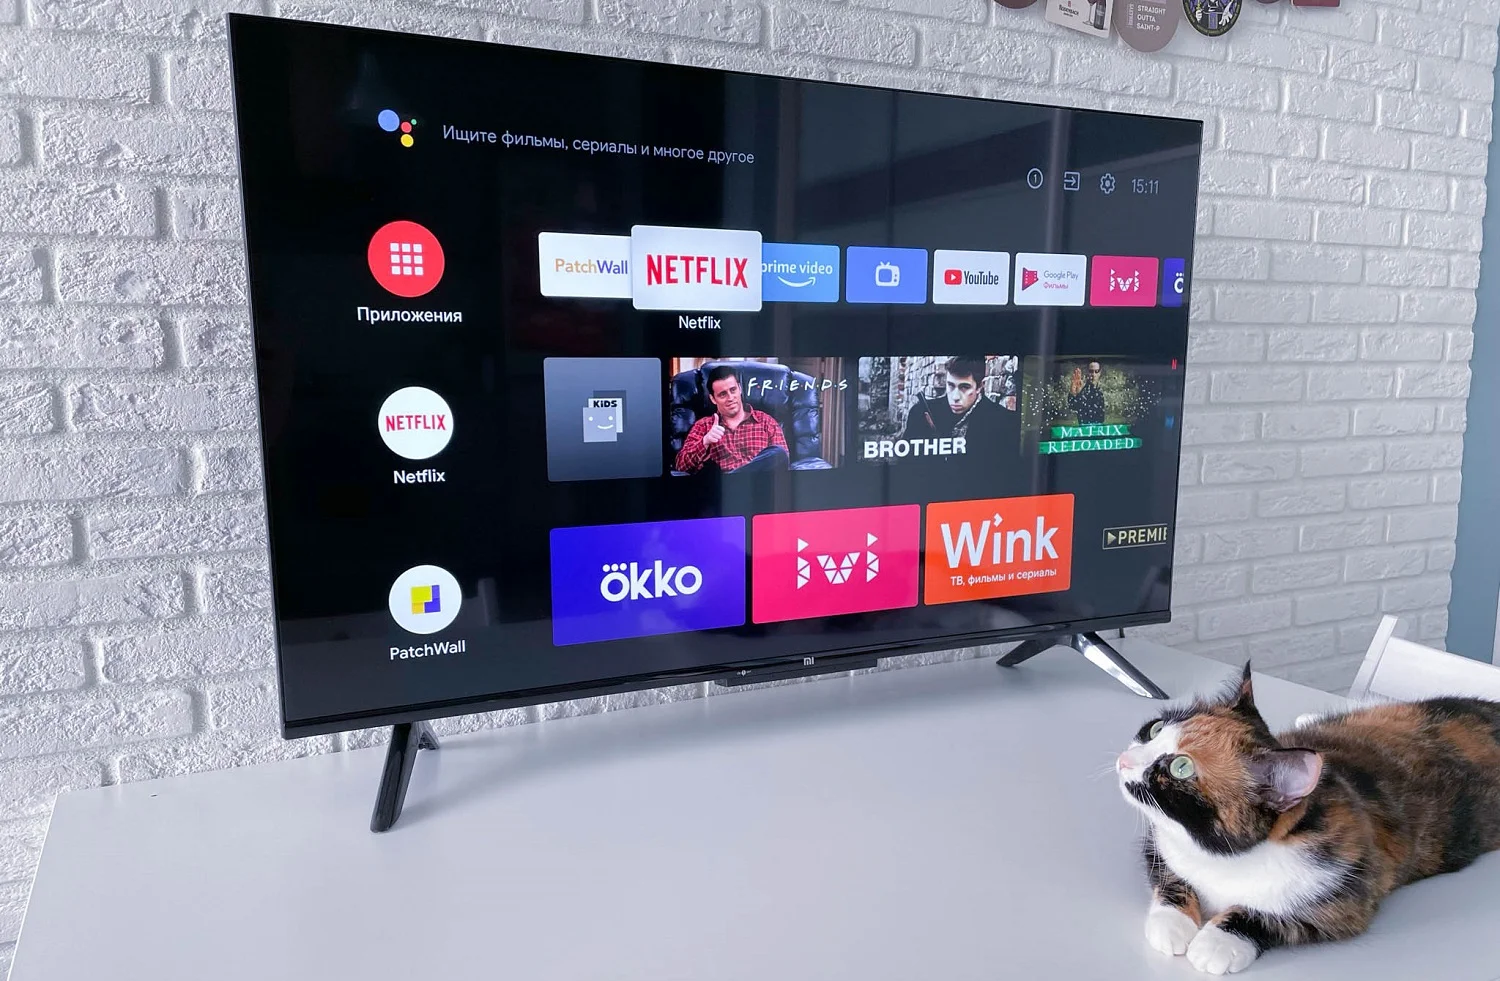 Обзор Xiaomi Mi TV P1: бюджетный 43-дюймовый 4К-телевизор для игр и кино - изображение 1